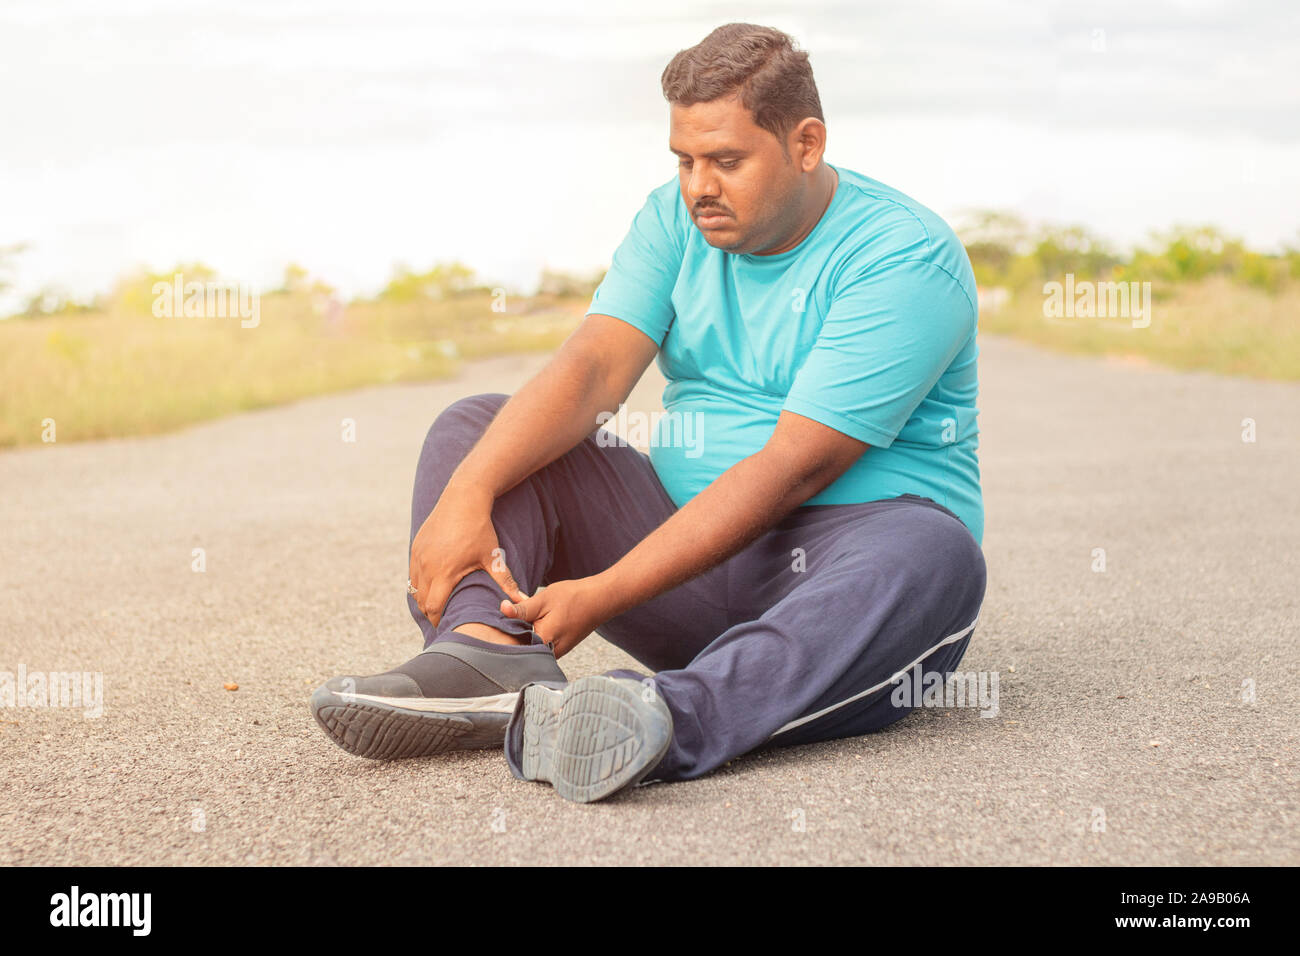 Concepto de lesión en el tendón de la pierna de fat man - obesos persona sosteniendo la pierna que sufren dolor muscular - fitness hombre con sobrepeso en concepto al aire libre del parque. Foto de stock